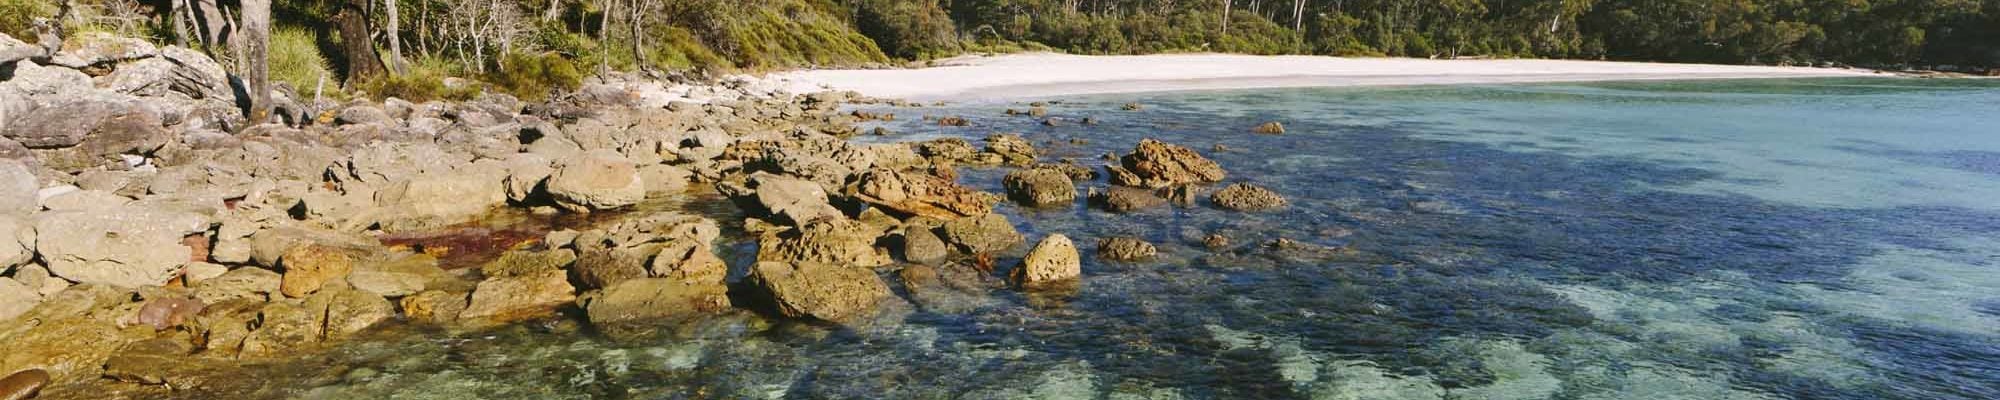 Plage Jervis Bay en Australie